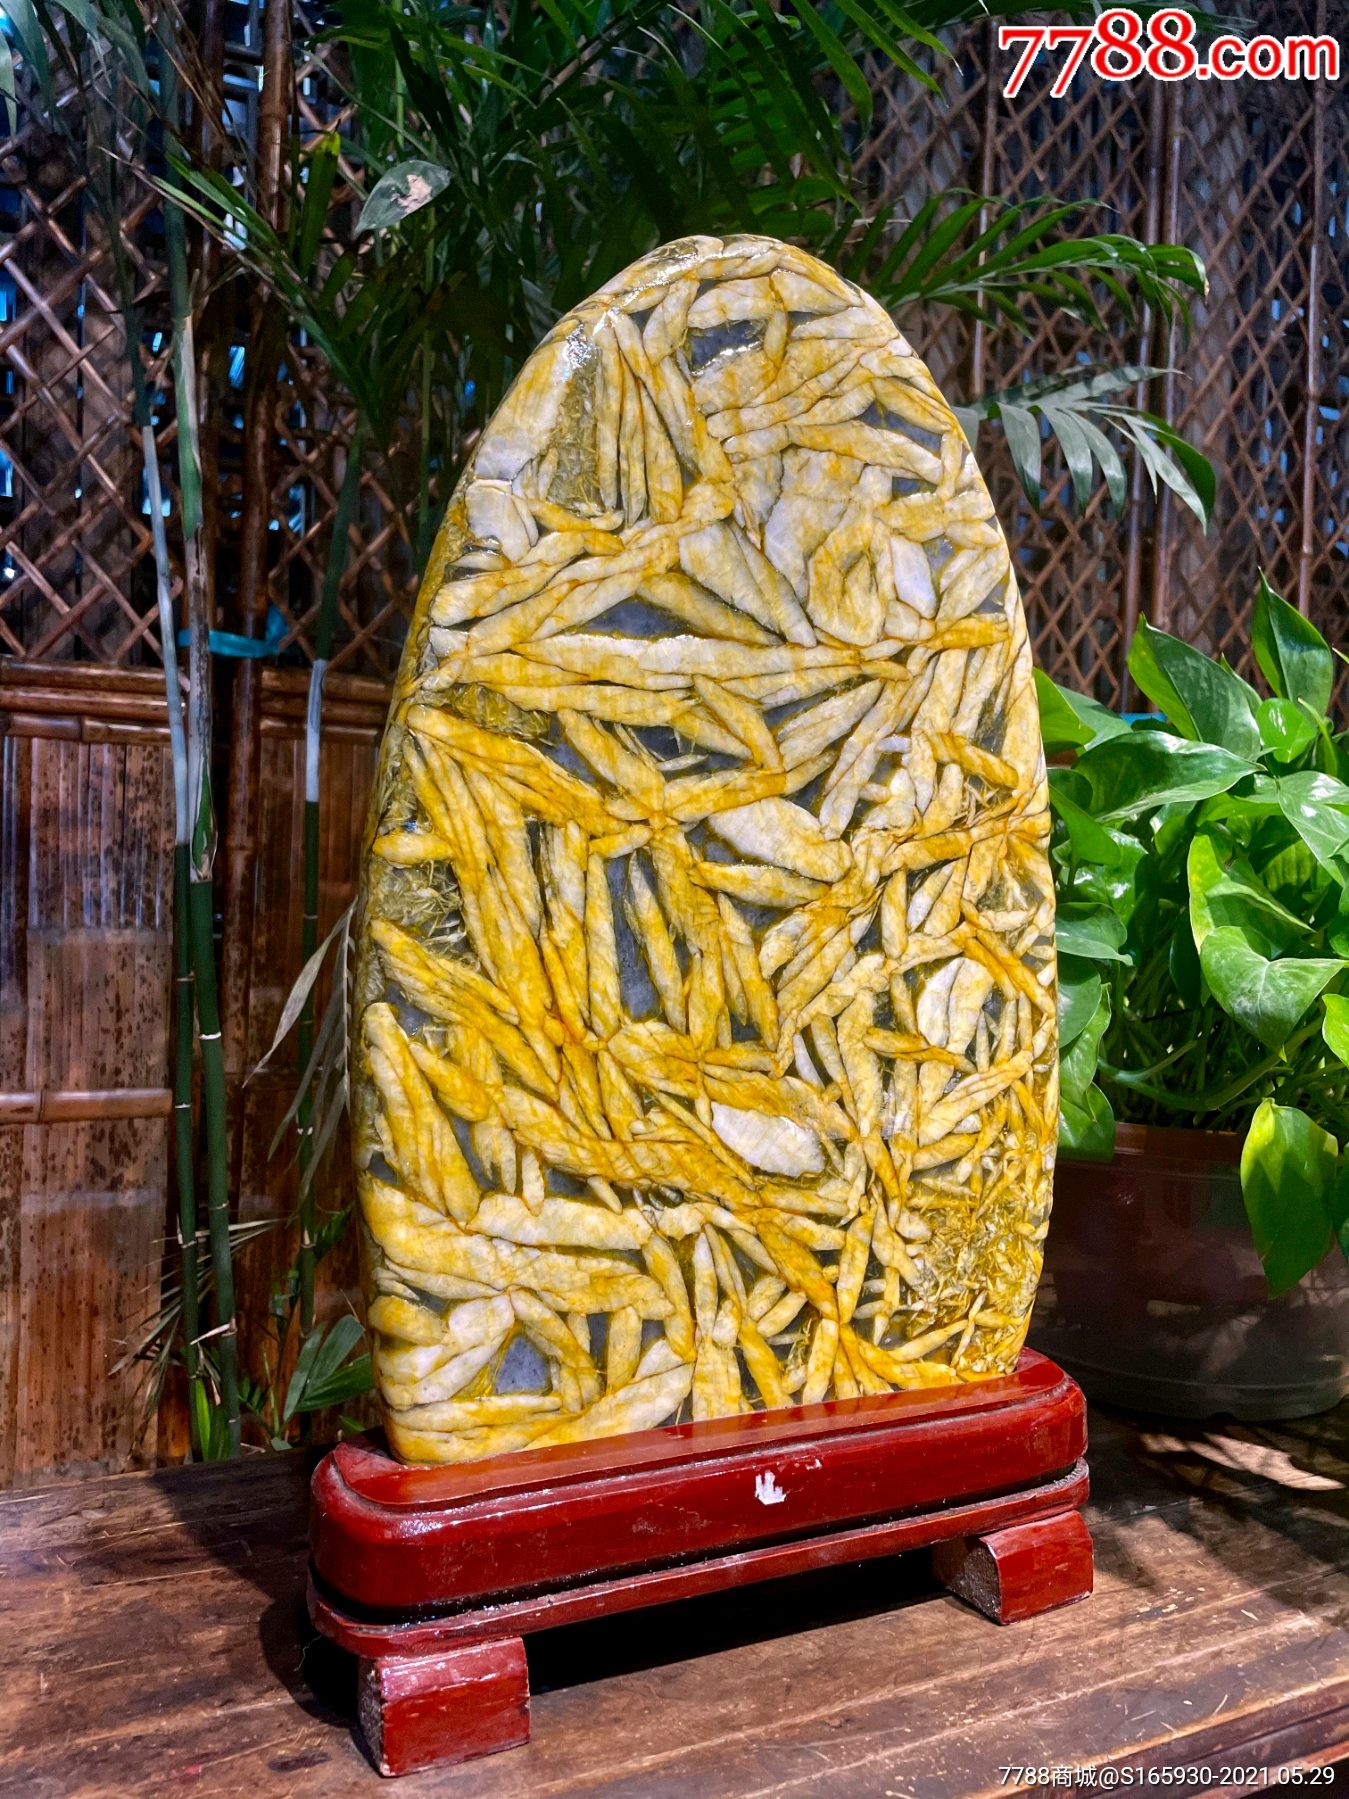 天然造型竹叶石黄金叶竹叶石,又称五花石鱼籽石,它是一种很有灵性的